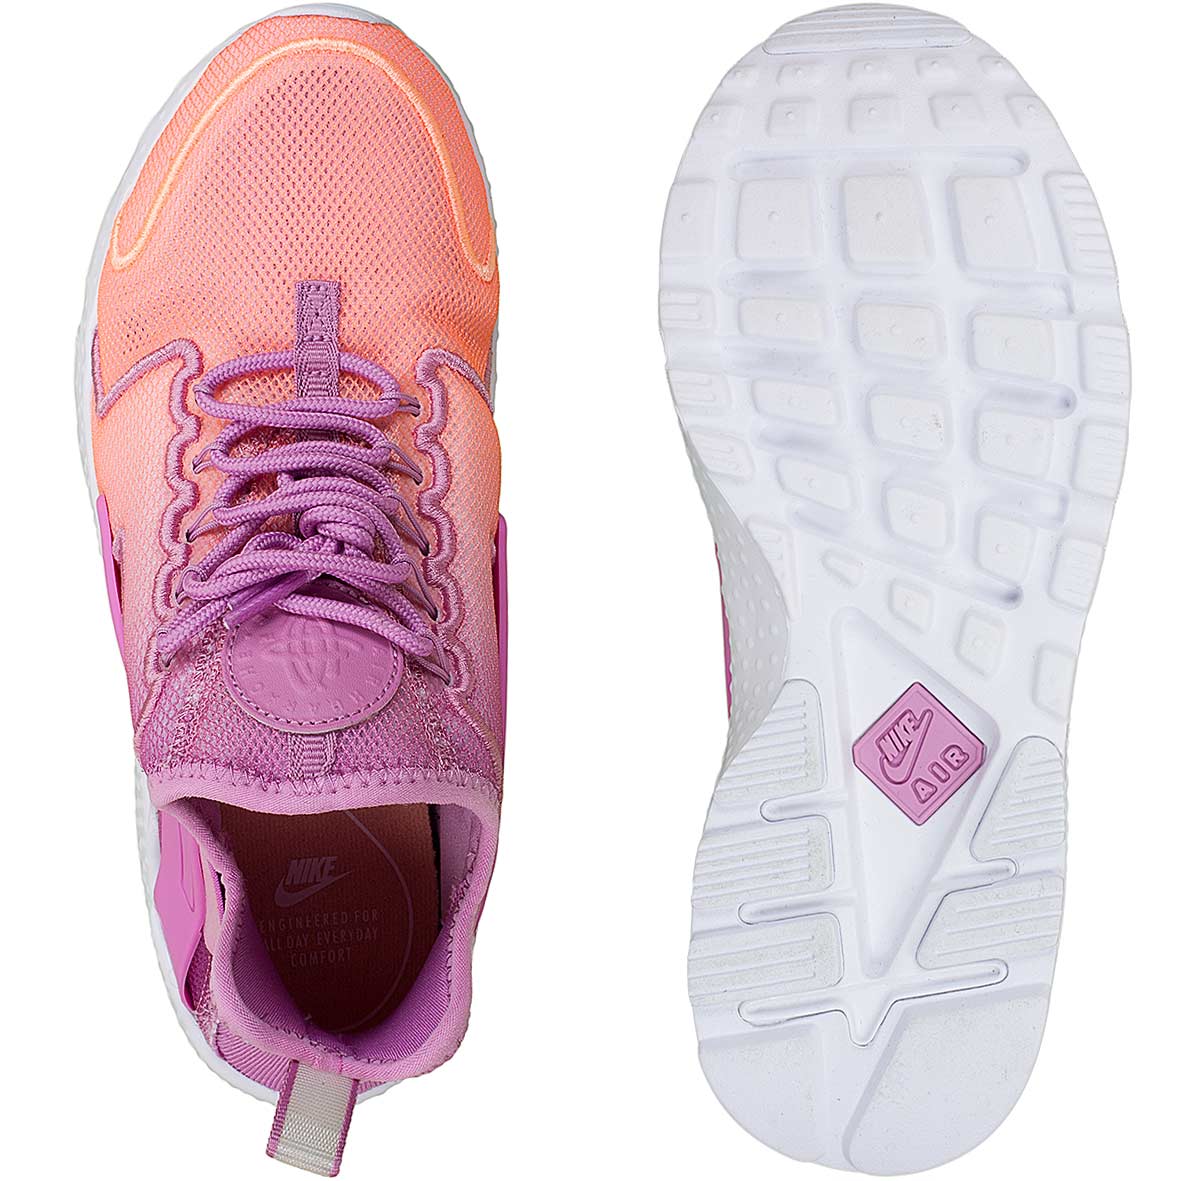 ☆ Nike Damen Sneaker Air Huarache Run Ultra BR orange/pink - hier bestellen!